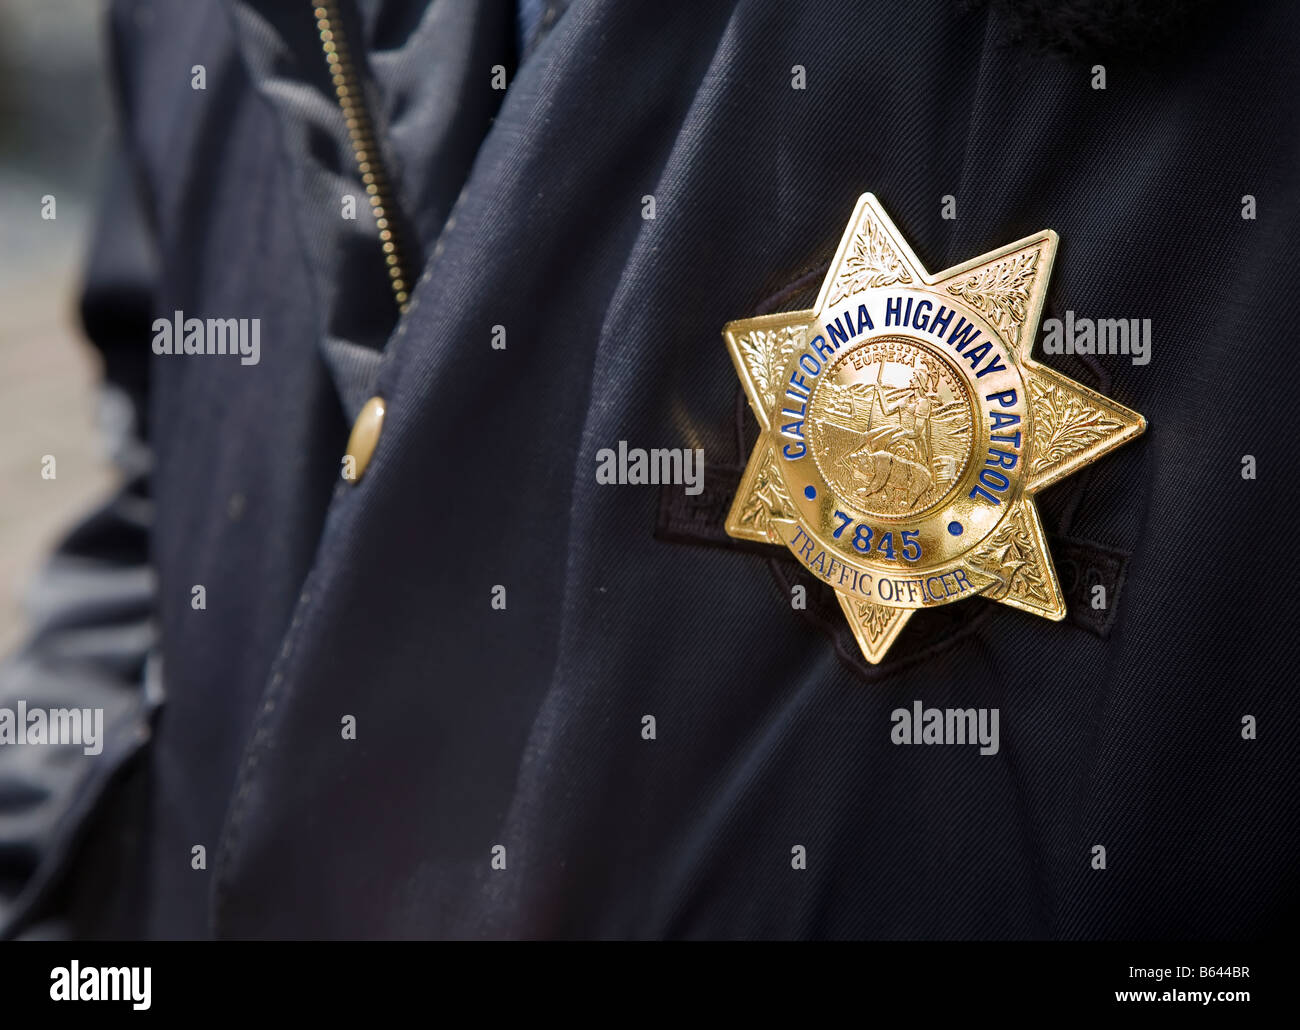 California Highway Patrol Verkehr Offizier Polizei Abzeichen  Stockfotografie - Alamy